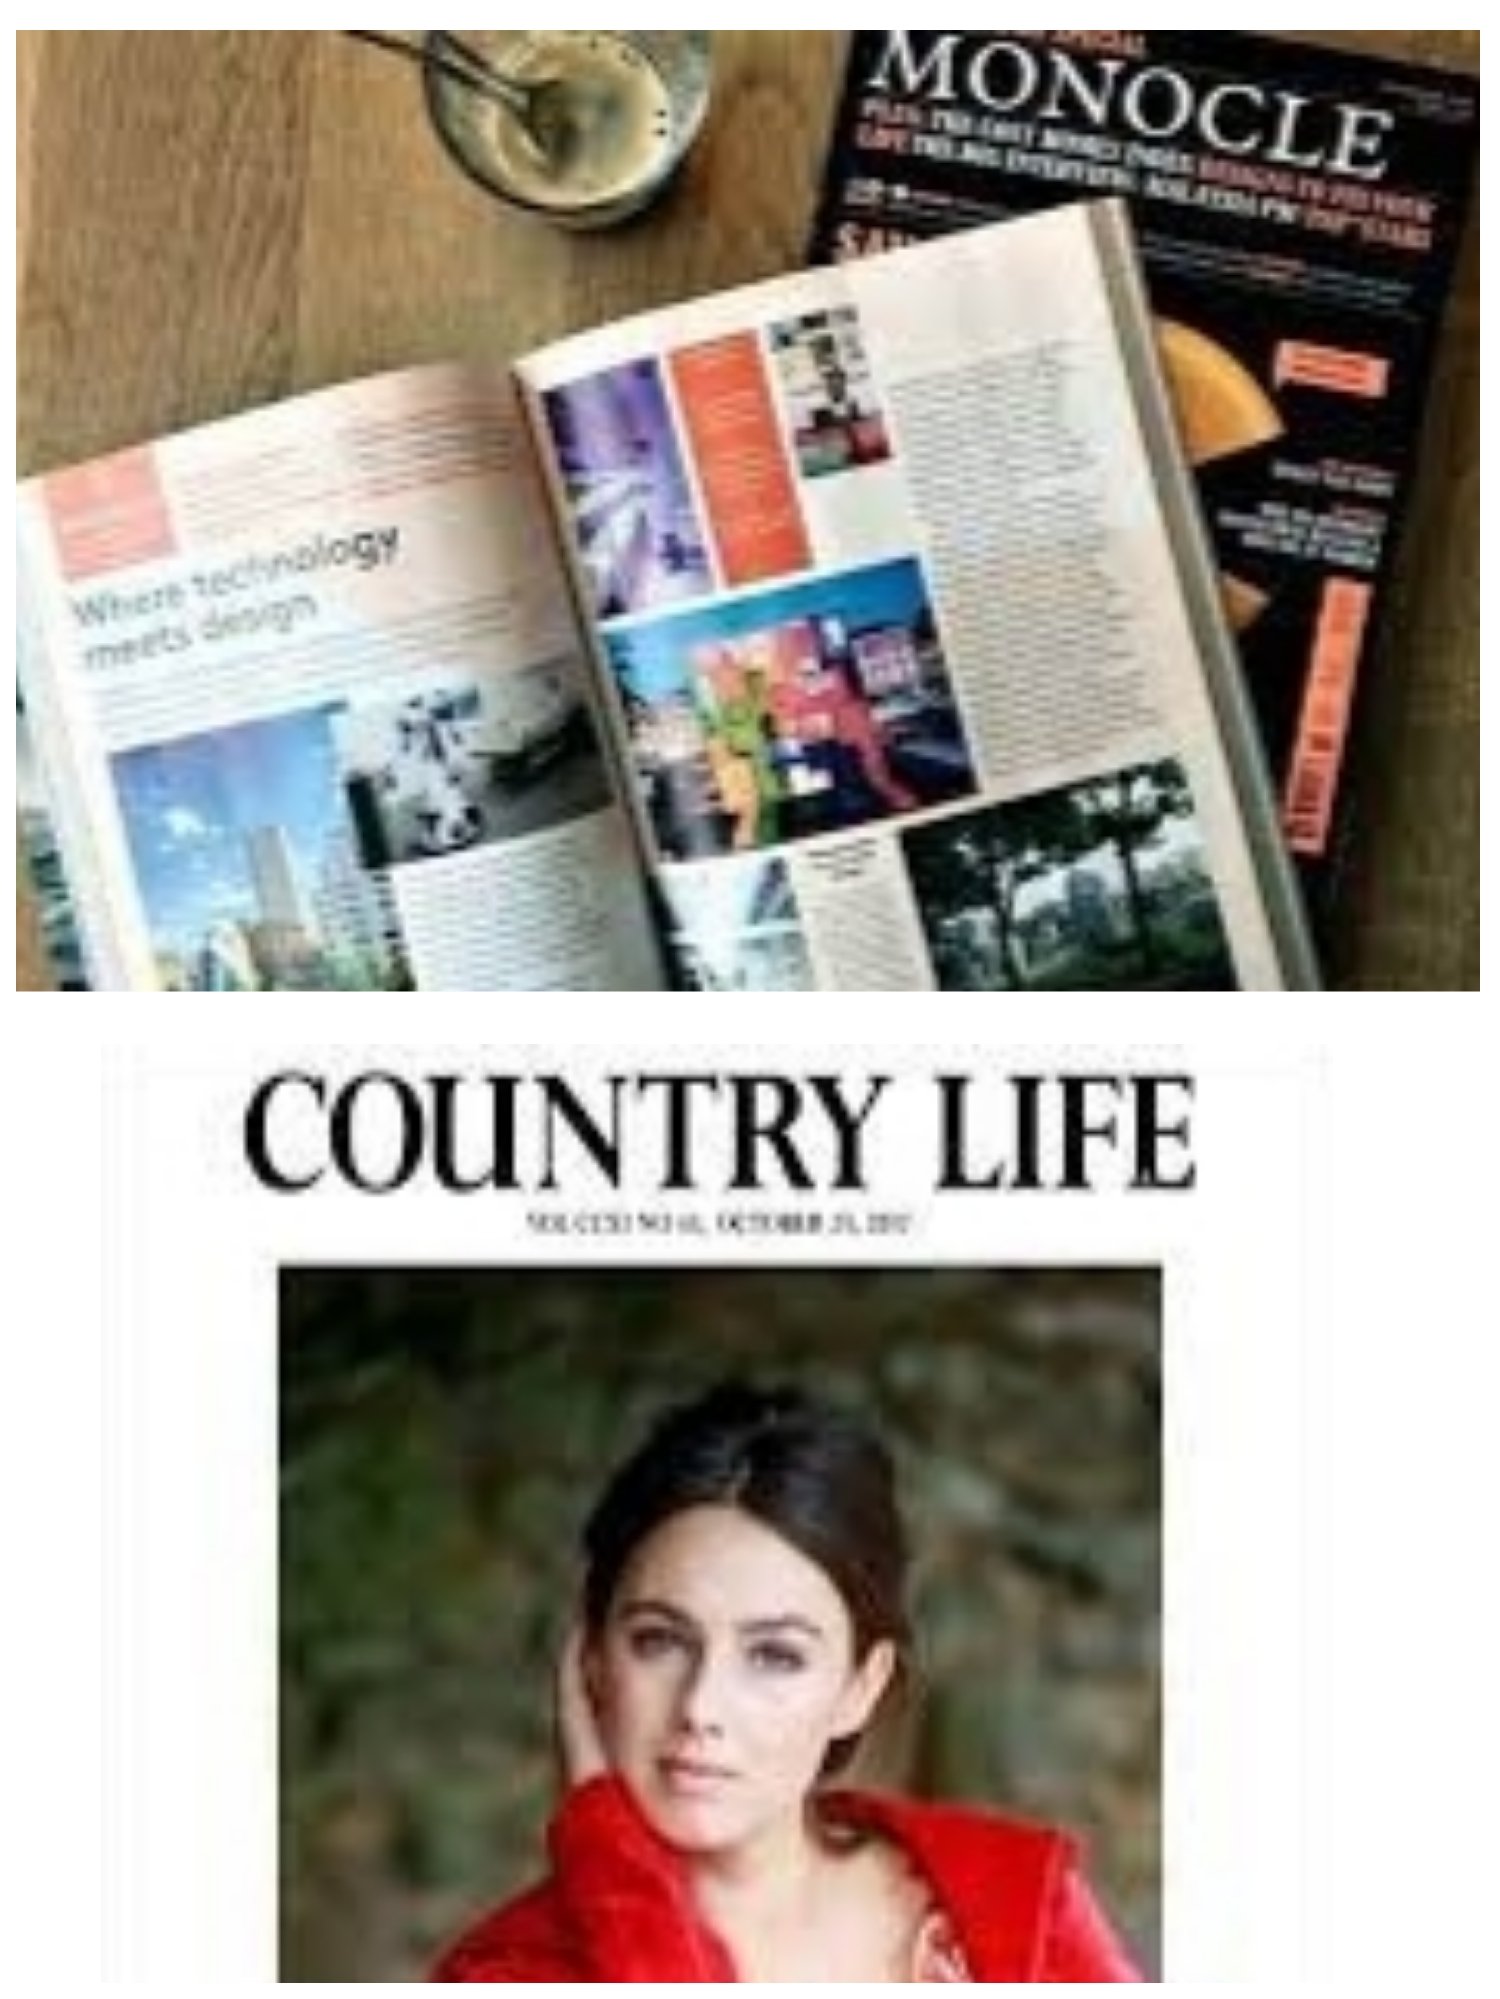 English lifestyle magazines